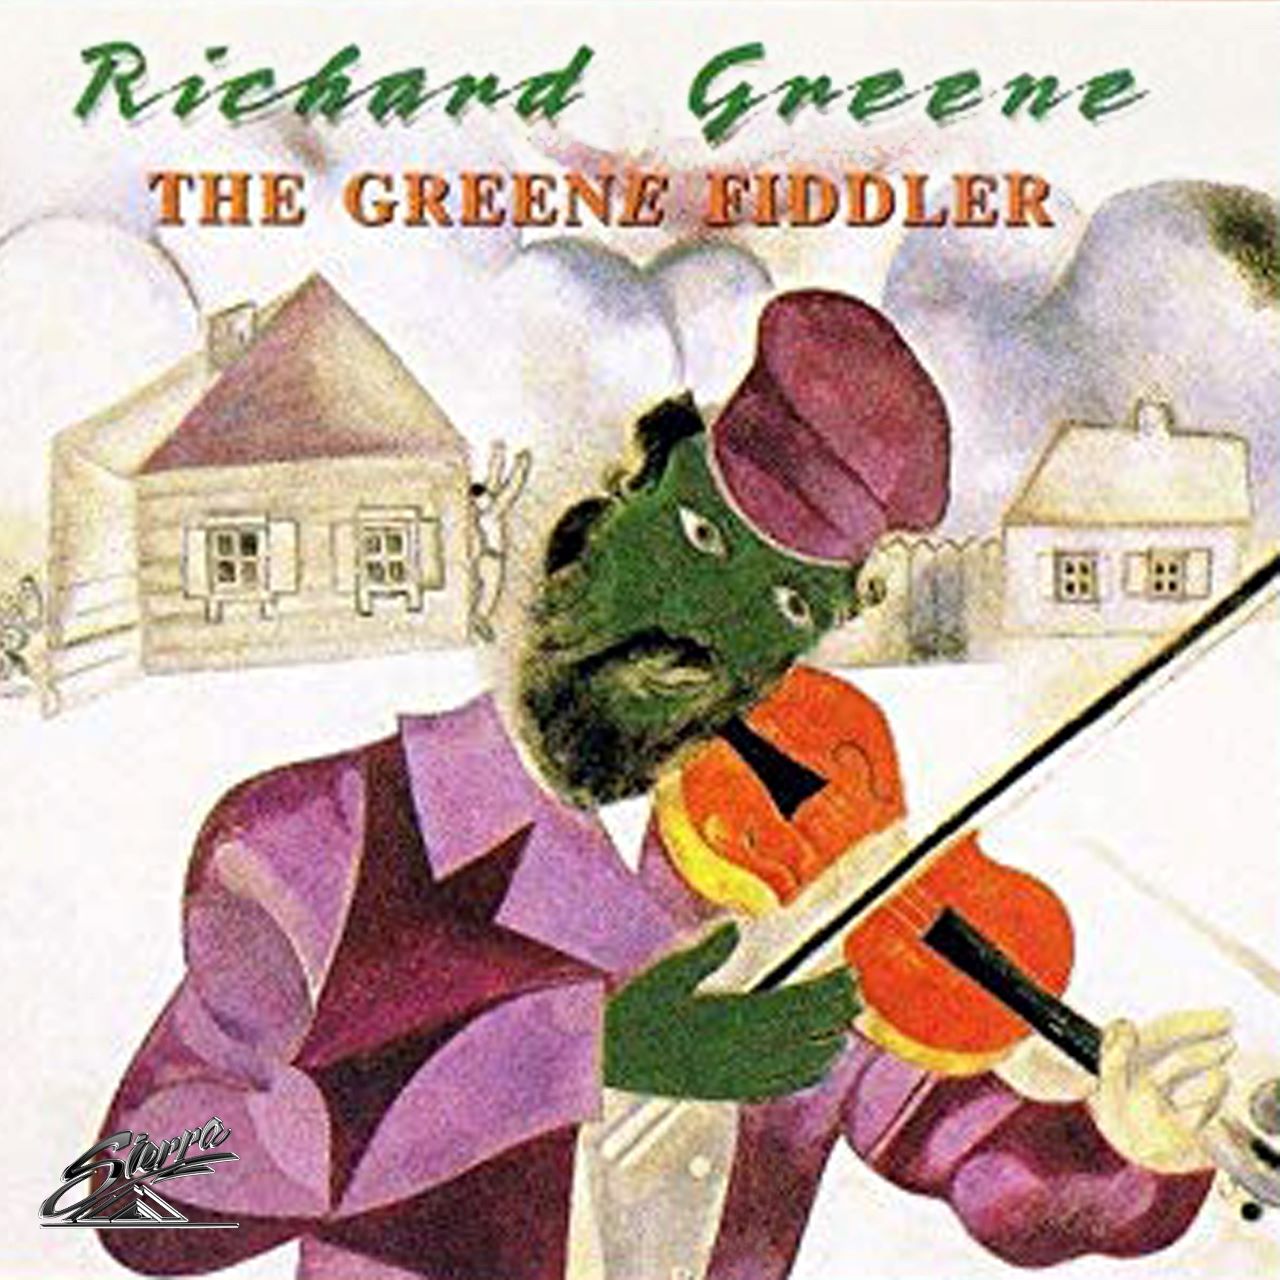 Richard Greene - The Greene Fiddler cover album